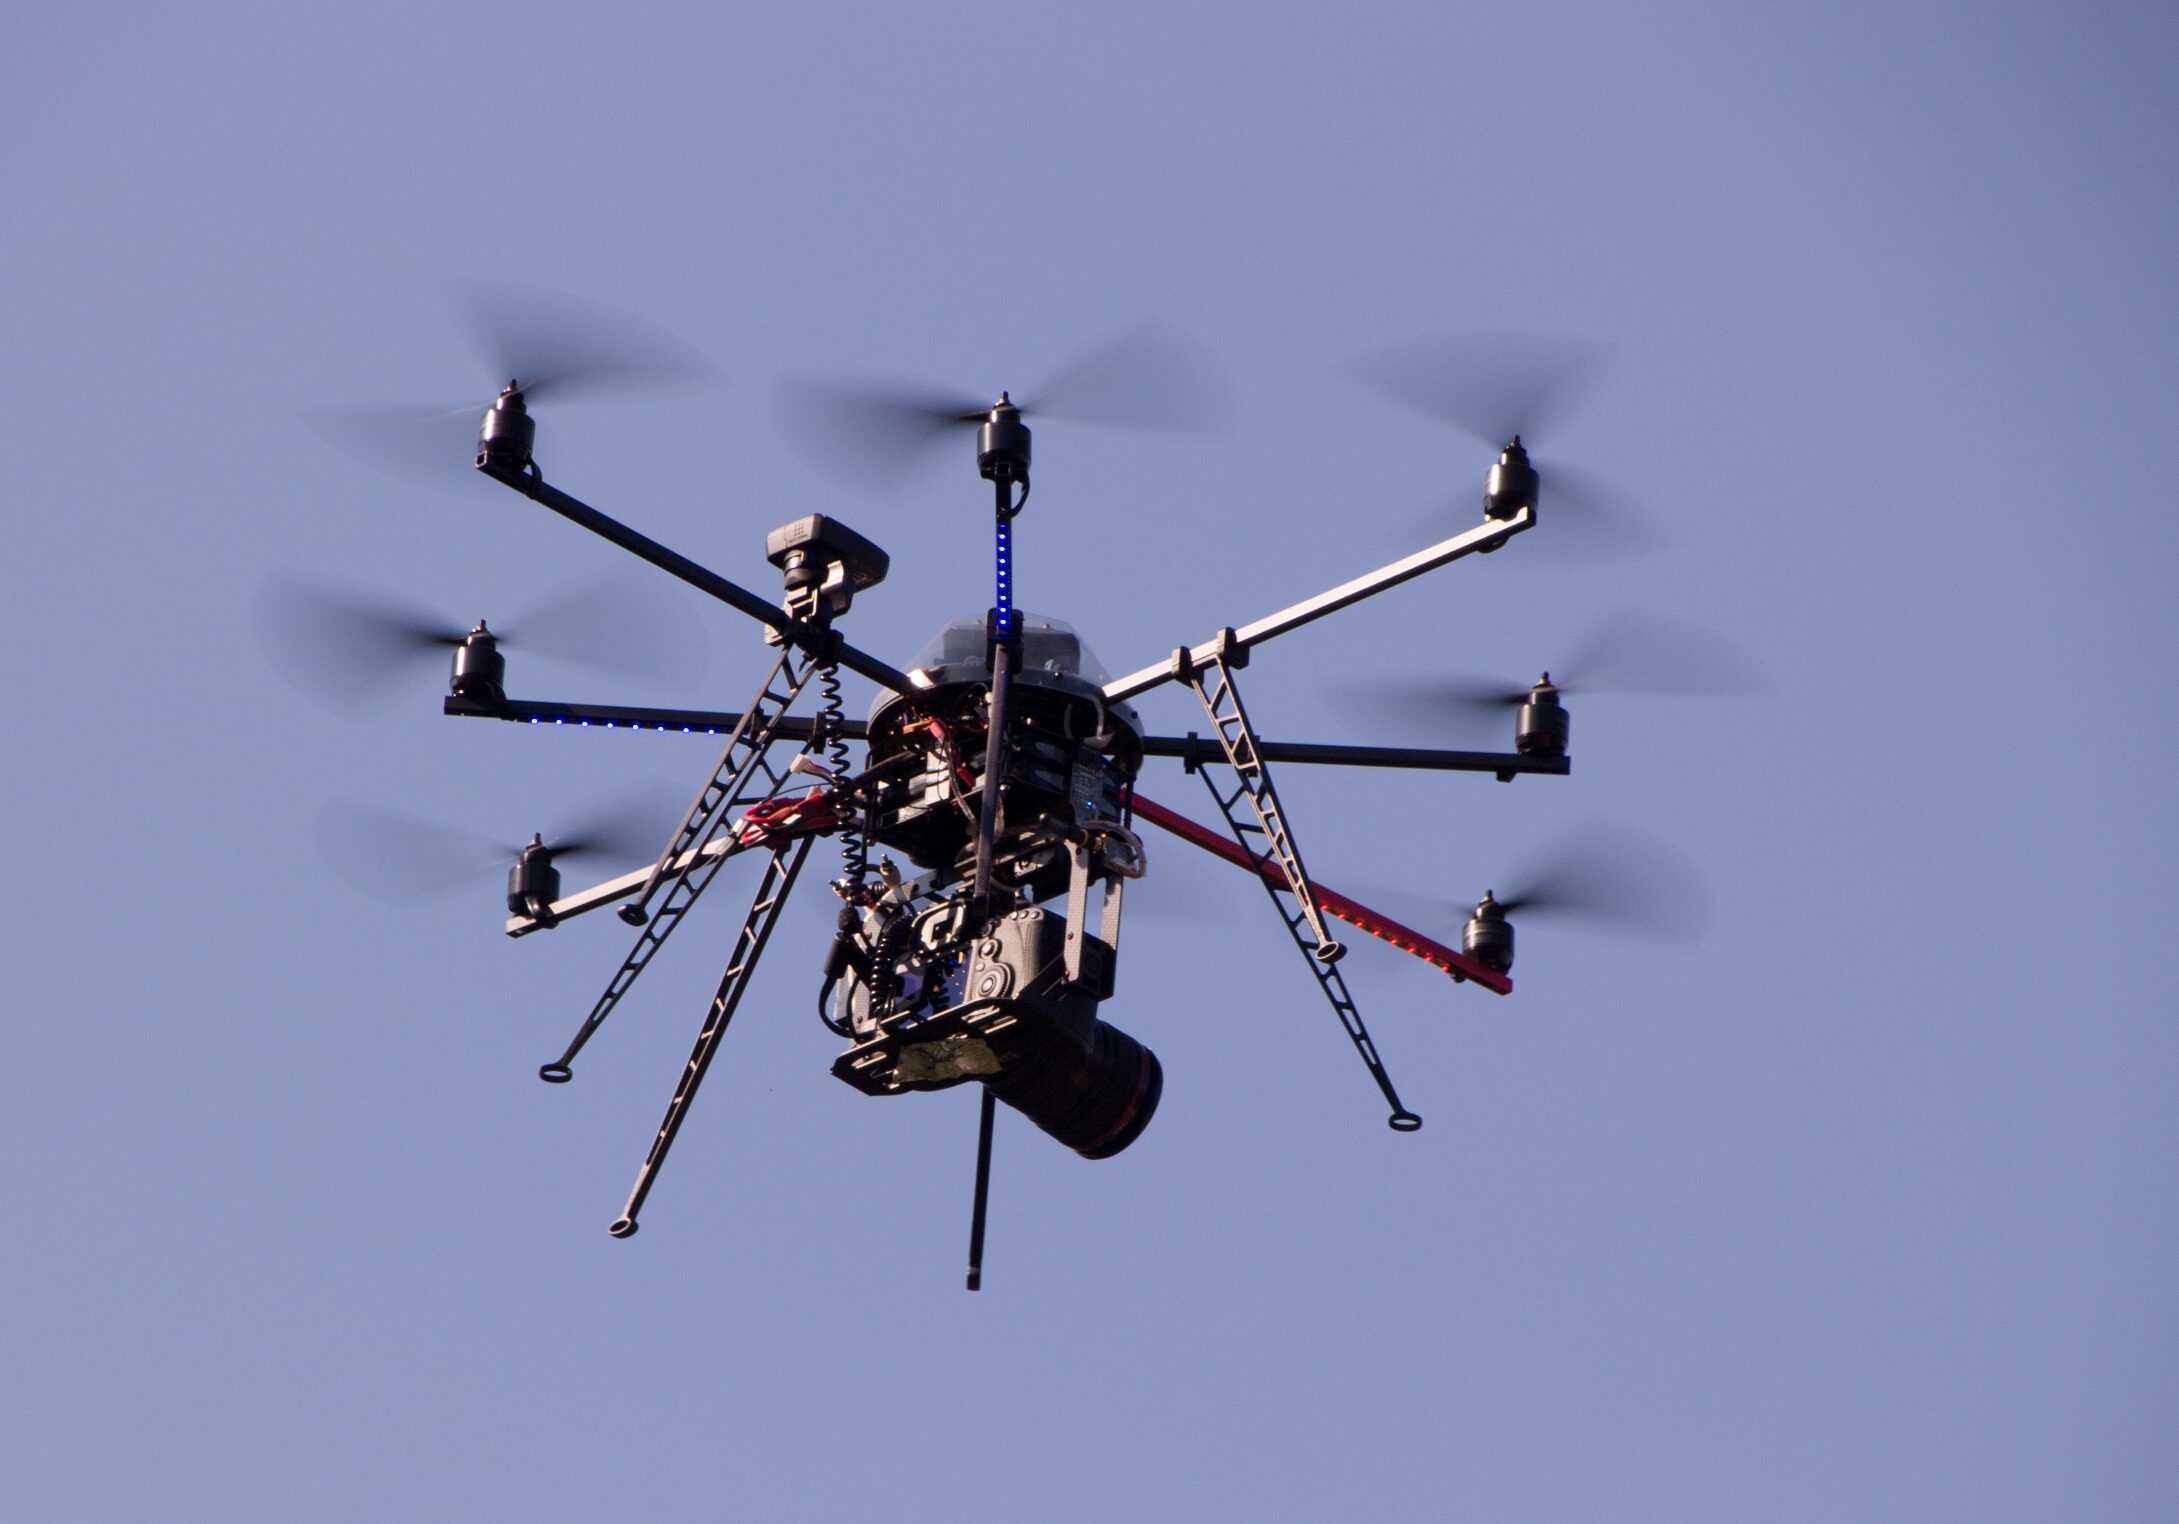 MK Lux-drones